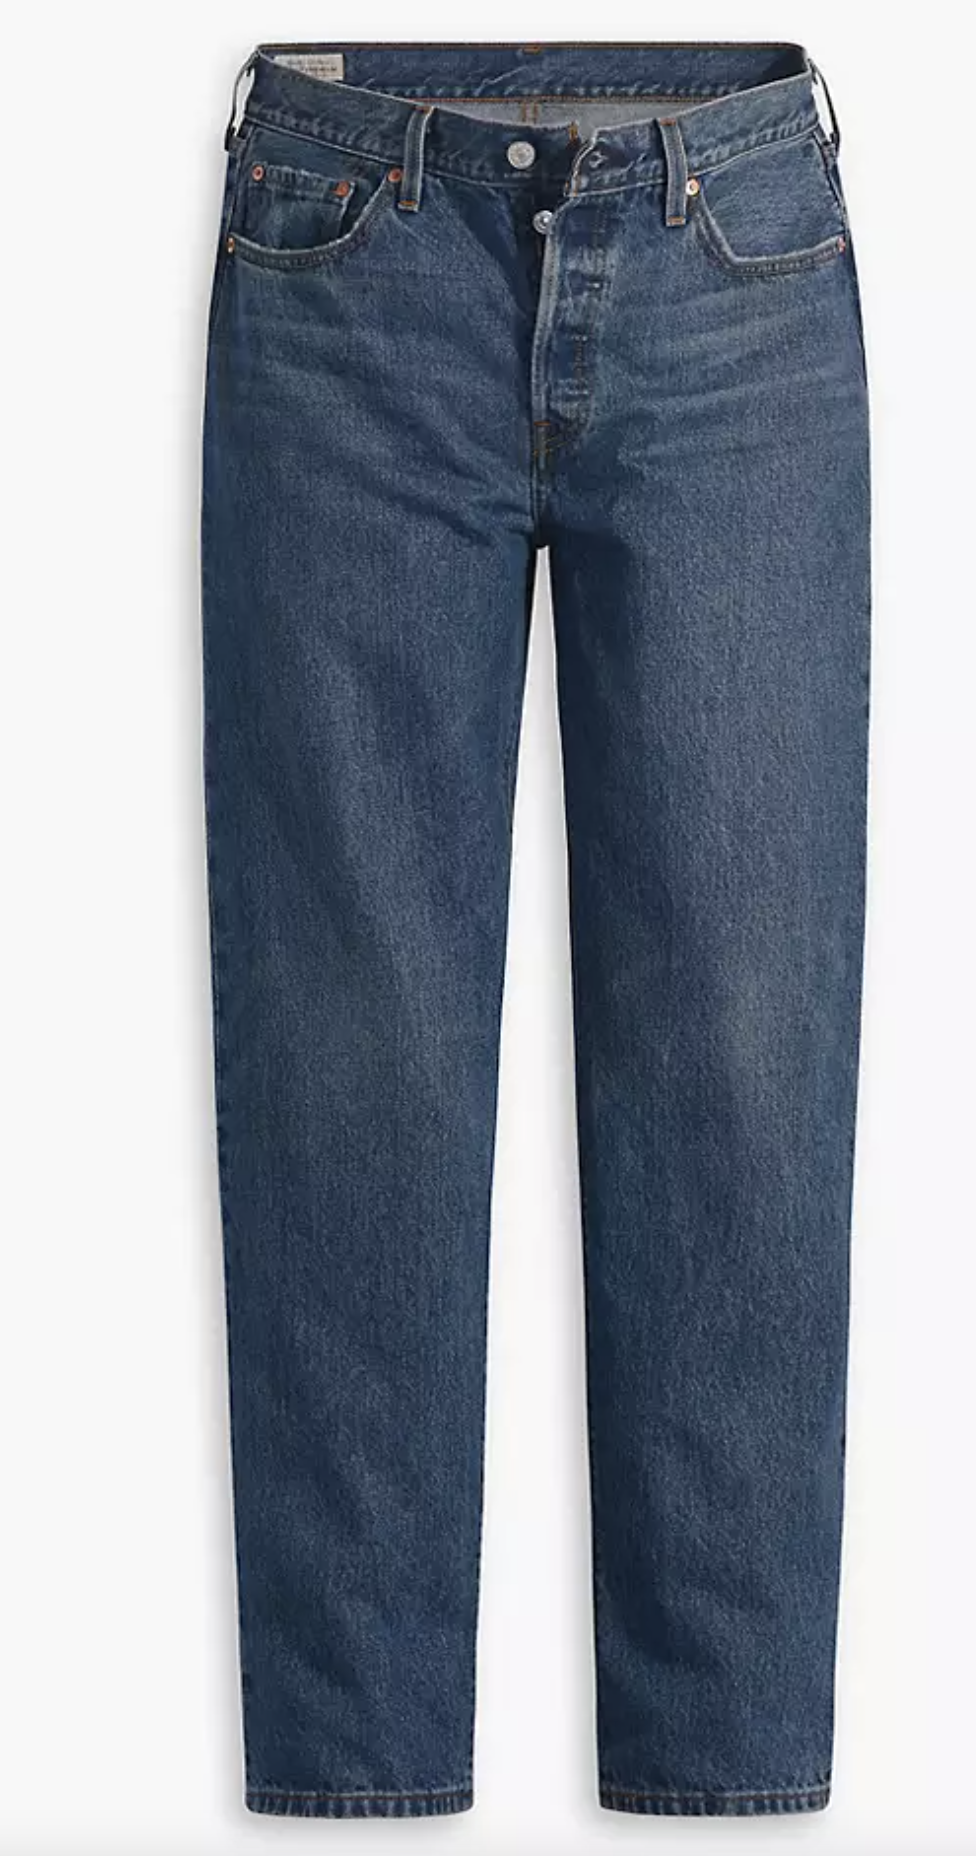 τα skinny τζιν δεν αρέσουν σε όλους, τα straight leg jeans όμως είναι η πιο διαχρονική επιλογή